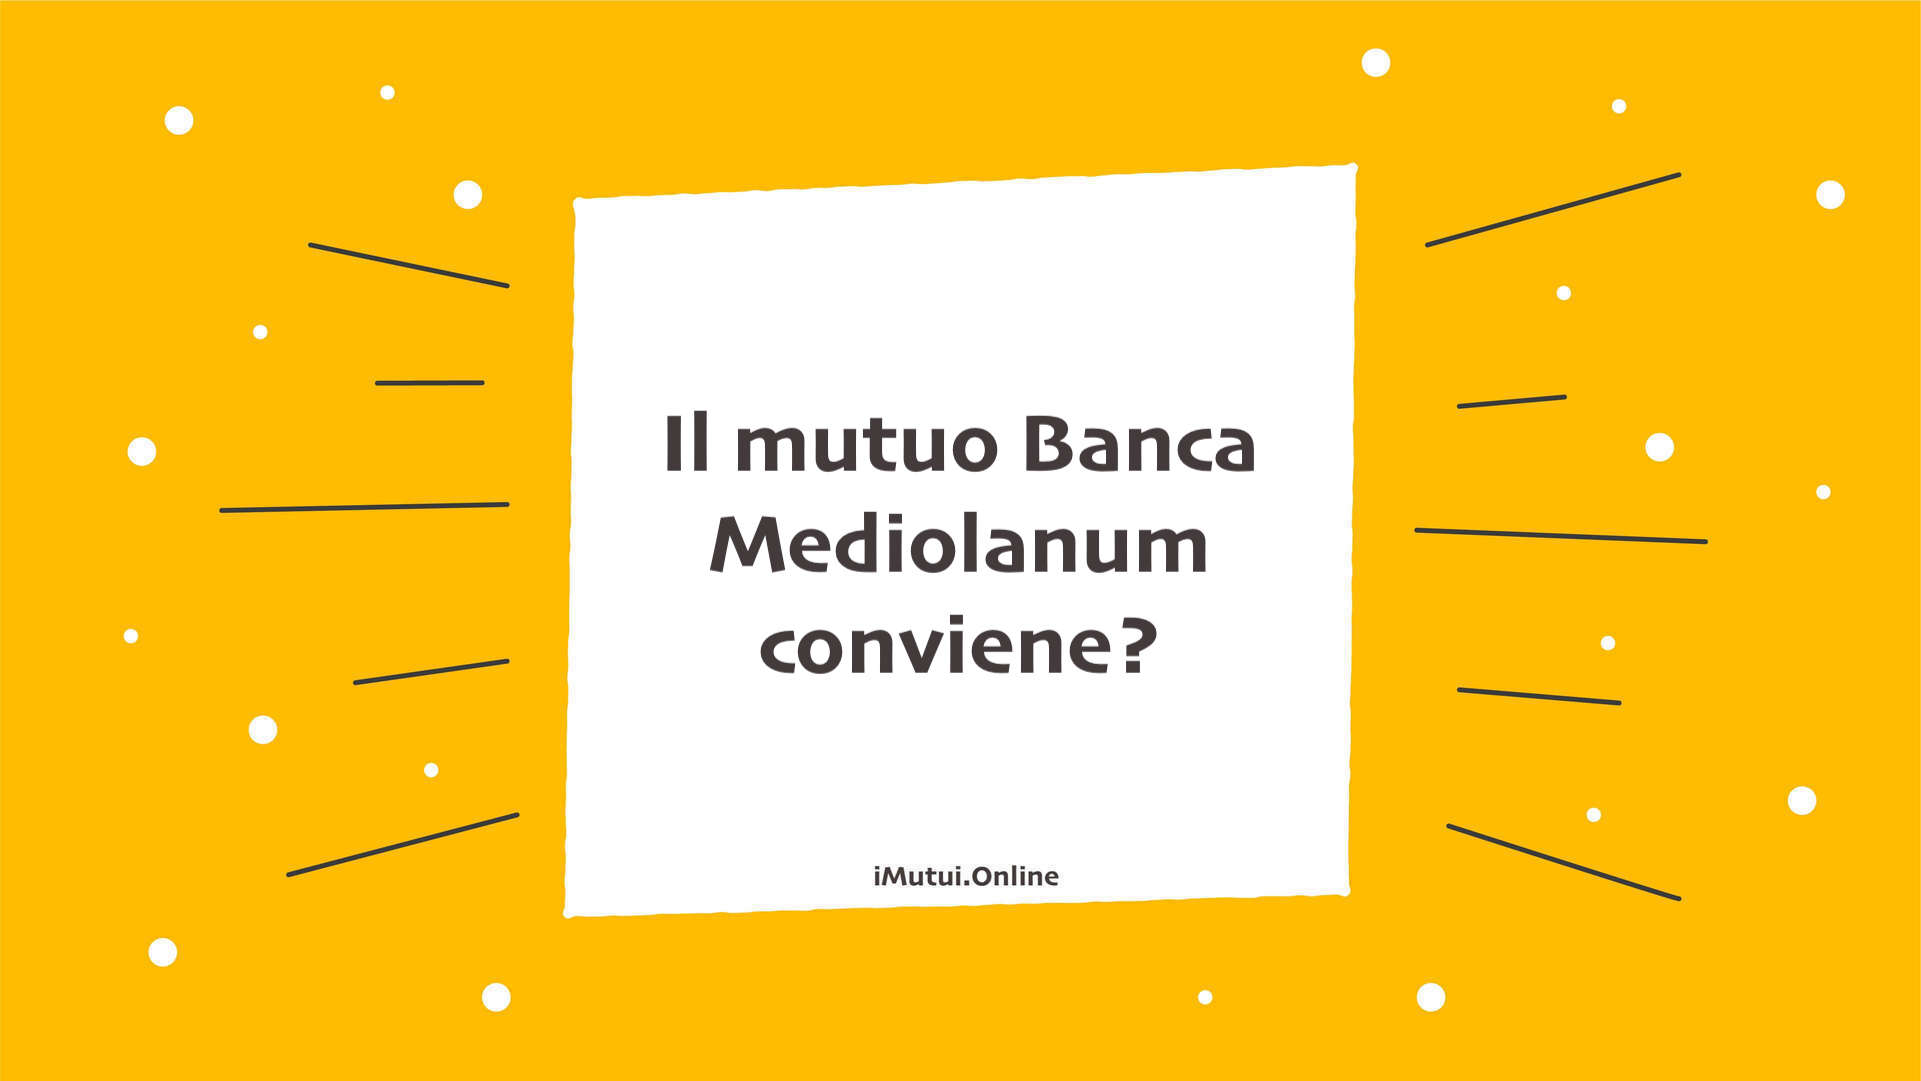 Il mutuo Banca Mediolanum conviene?